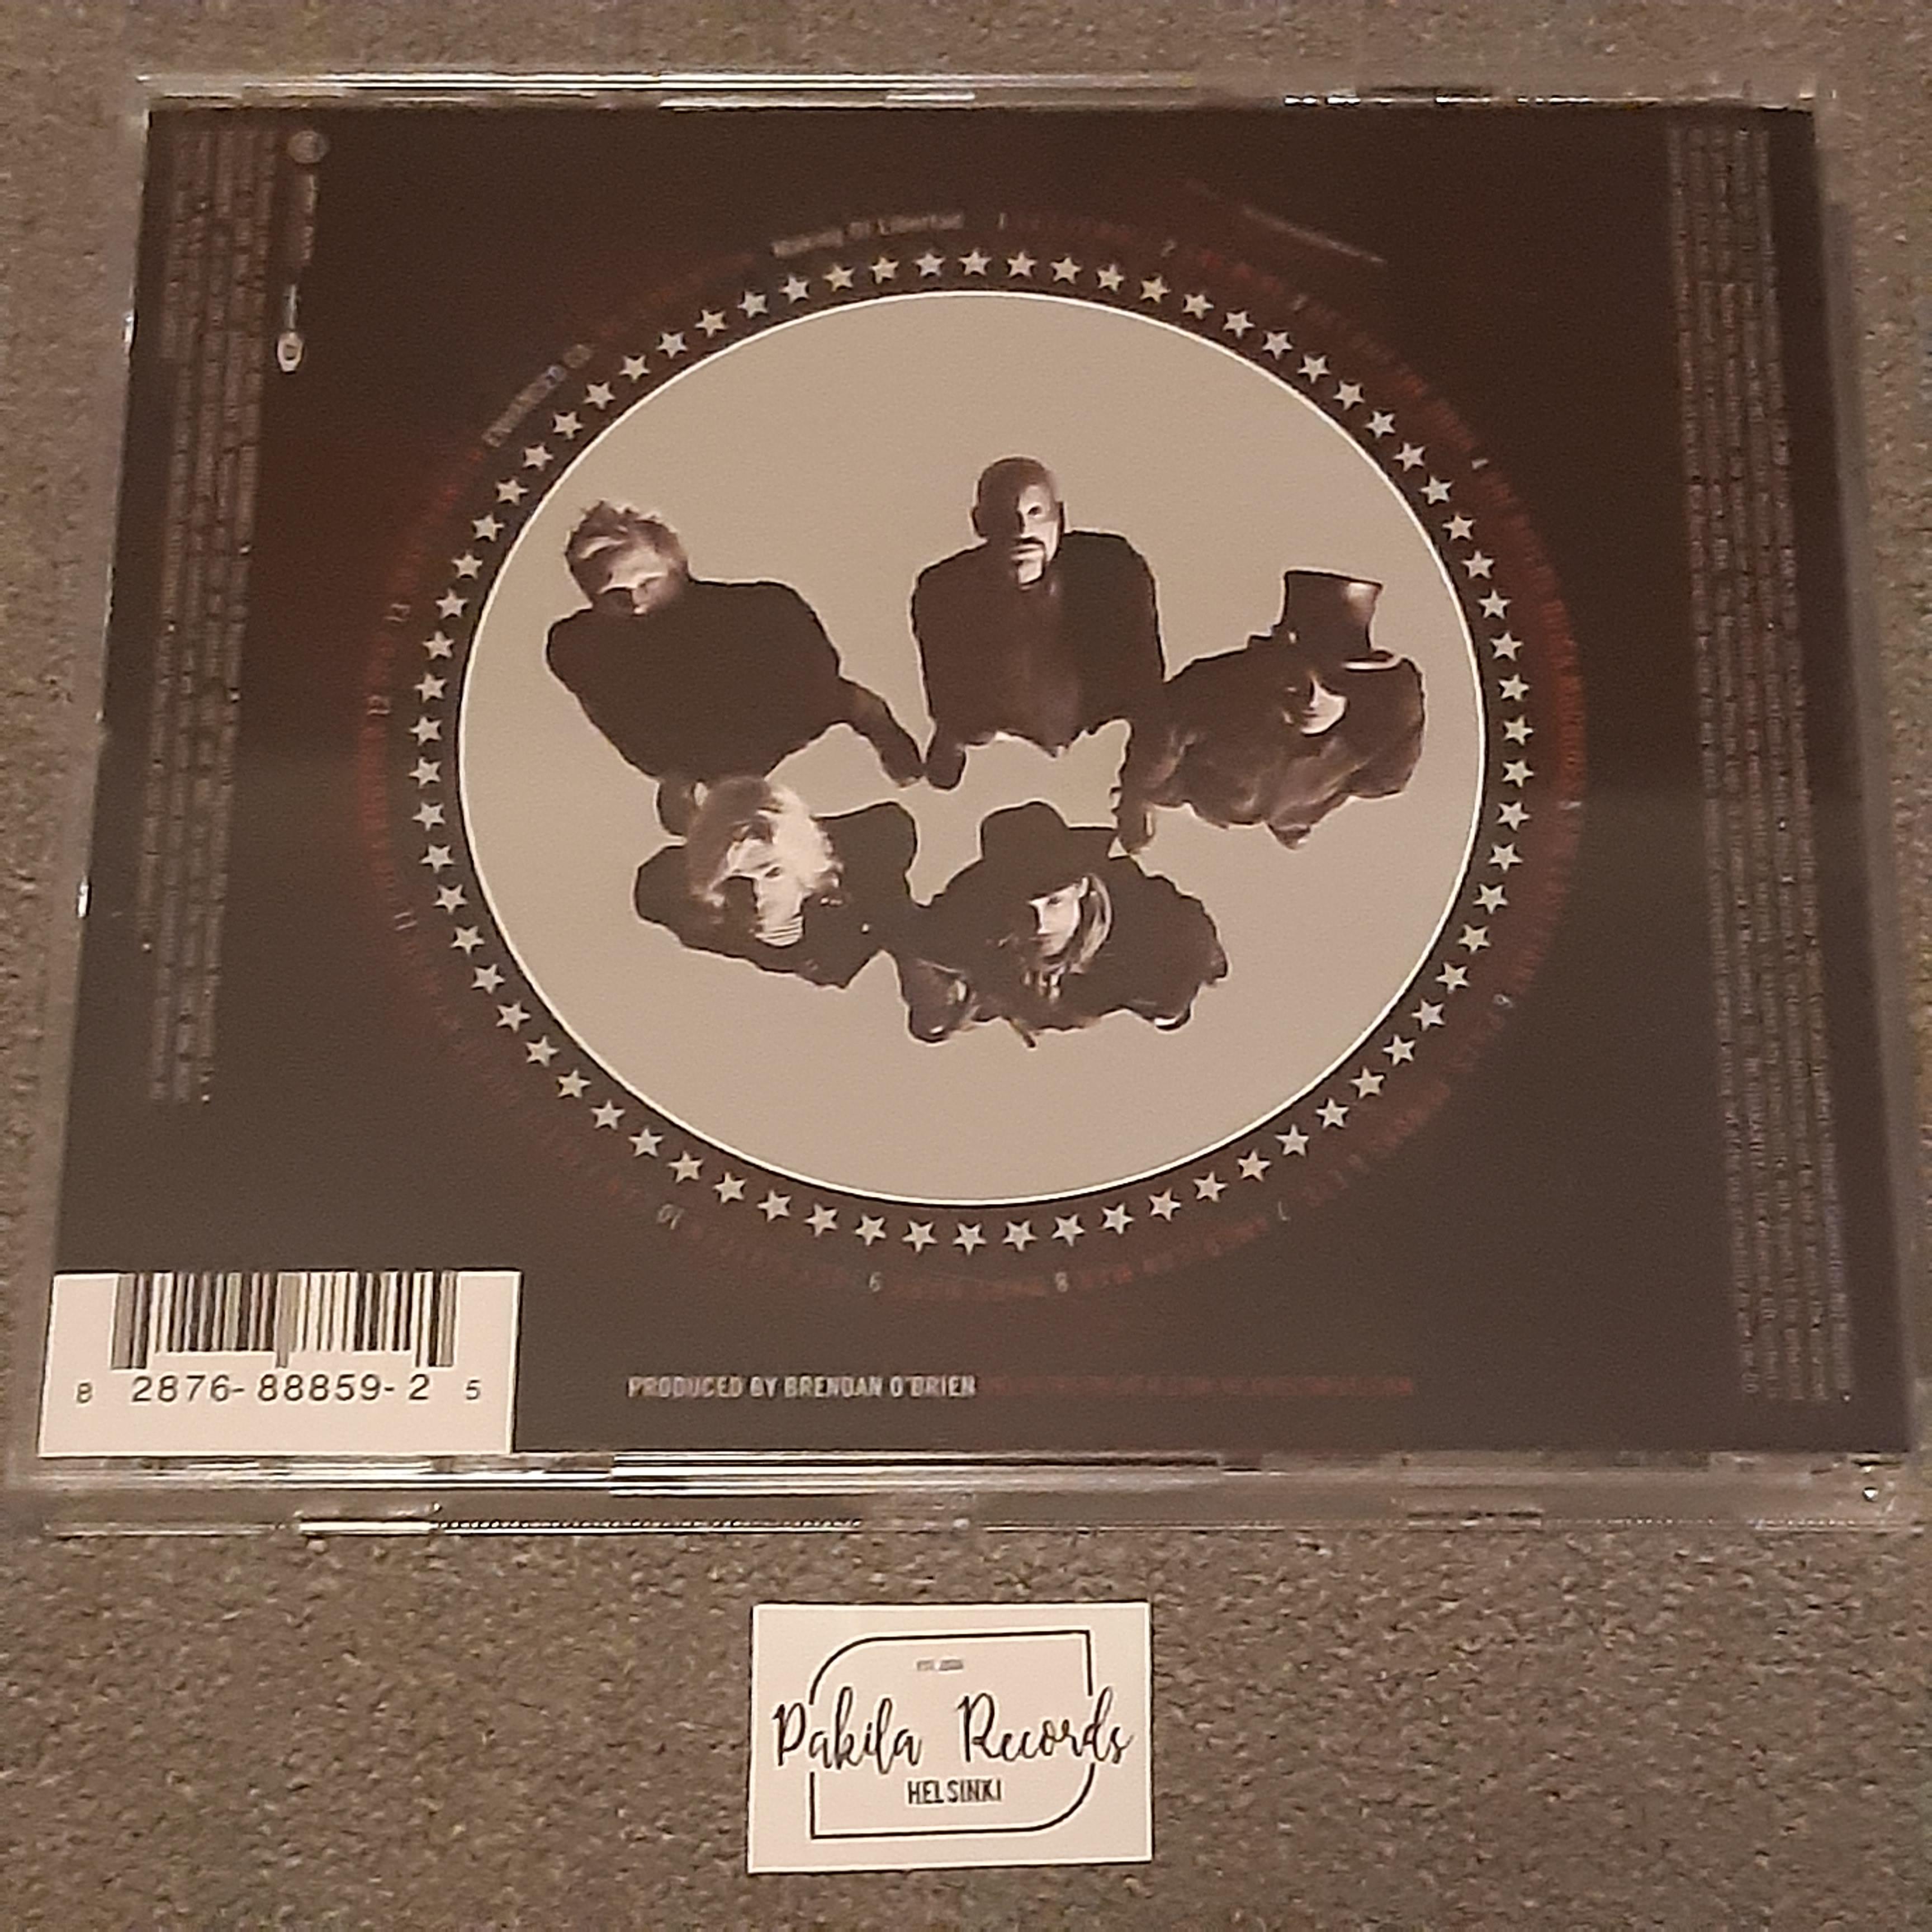 Velvet Revolver - Libertad - CD (käytetty)